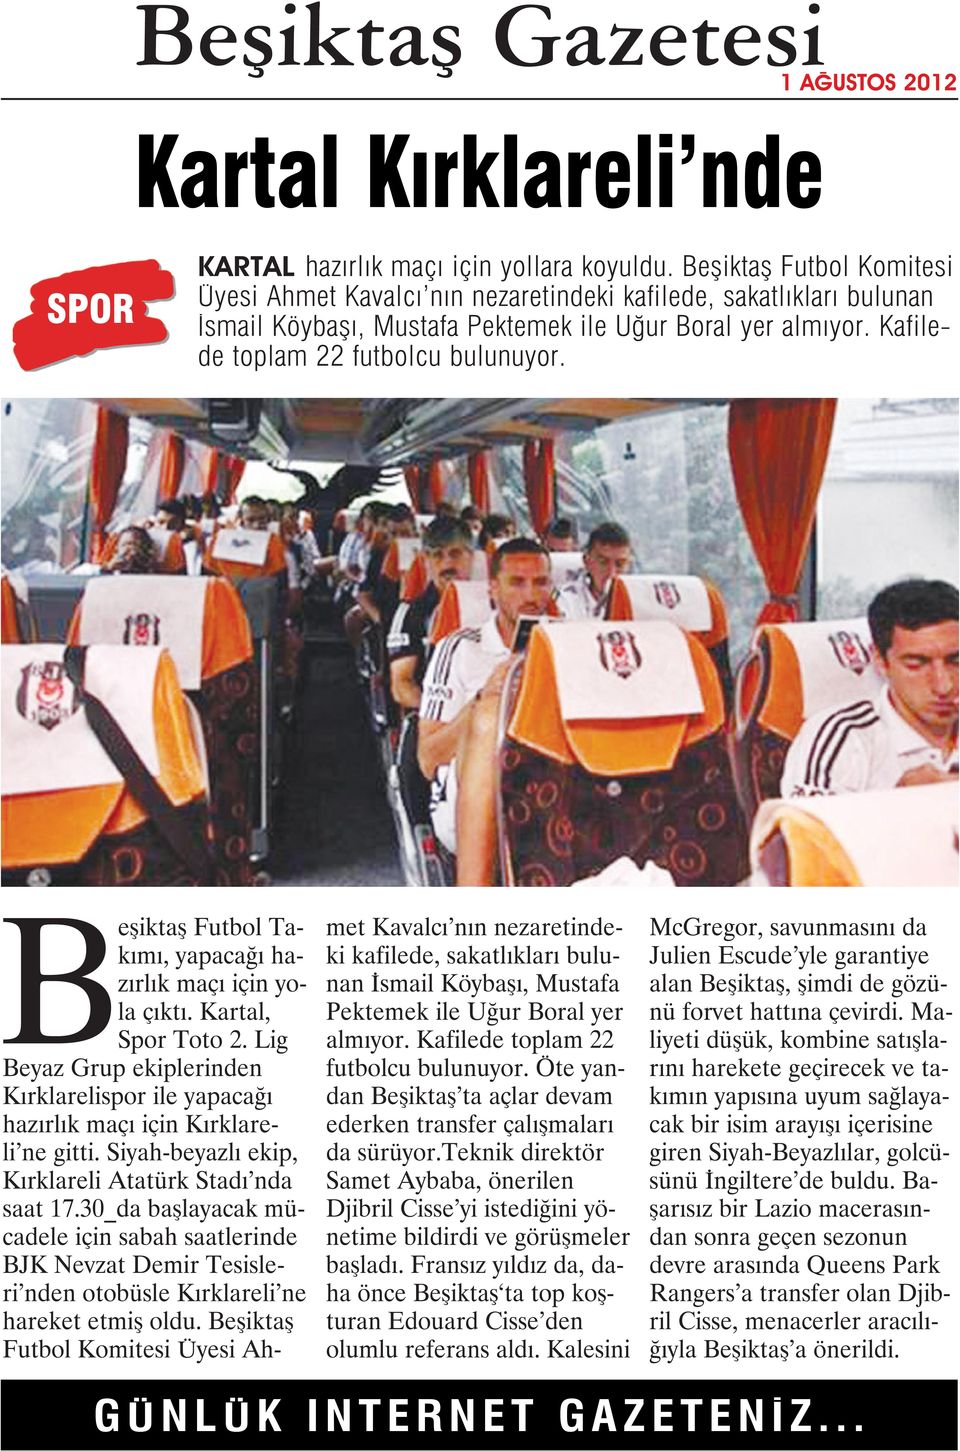 Beşiktaş Futbol Takımı, yapacağı hazırlık maçı için yola çıktı. Kartal, Spor Toto 2. Lig Beyaz Grup ekiplerinden Kırklarelispor ile yapacağı hazırlık maçı için Kırklareli ne gitti.